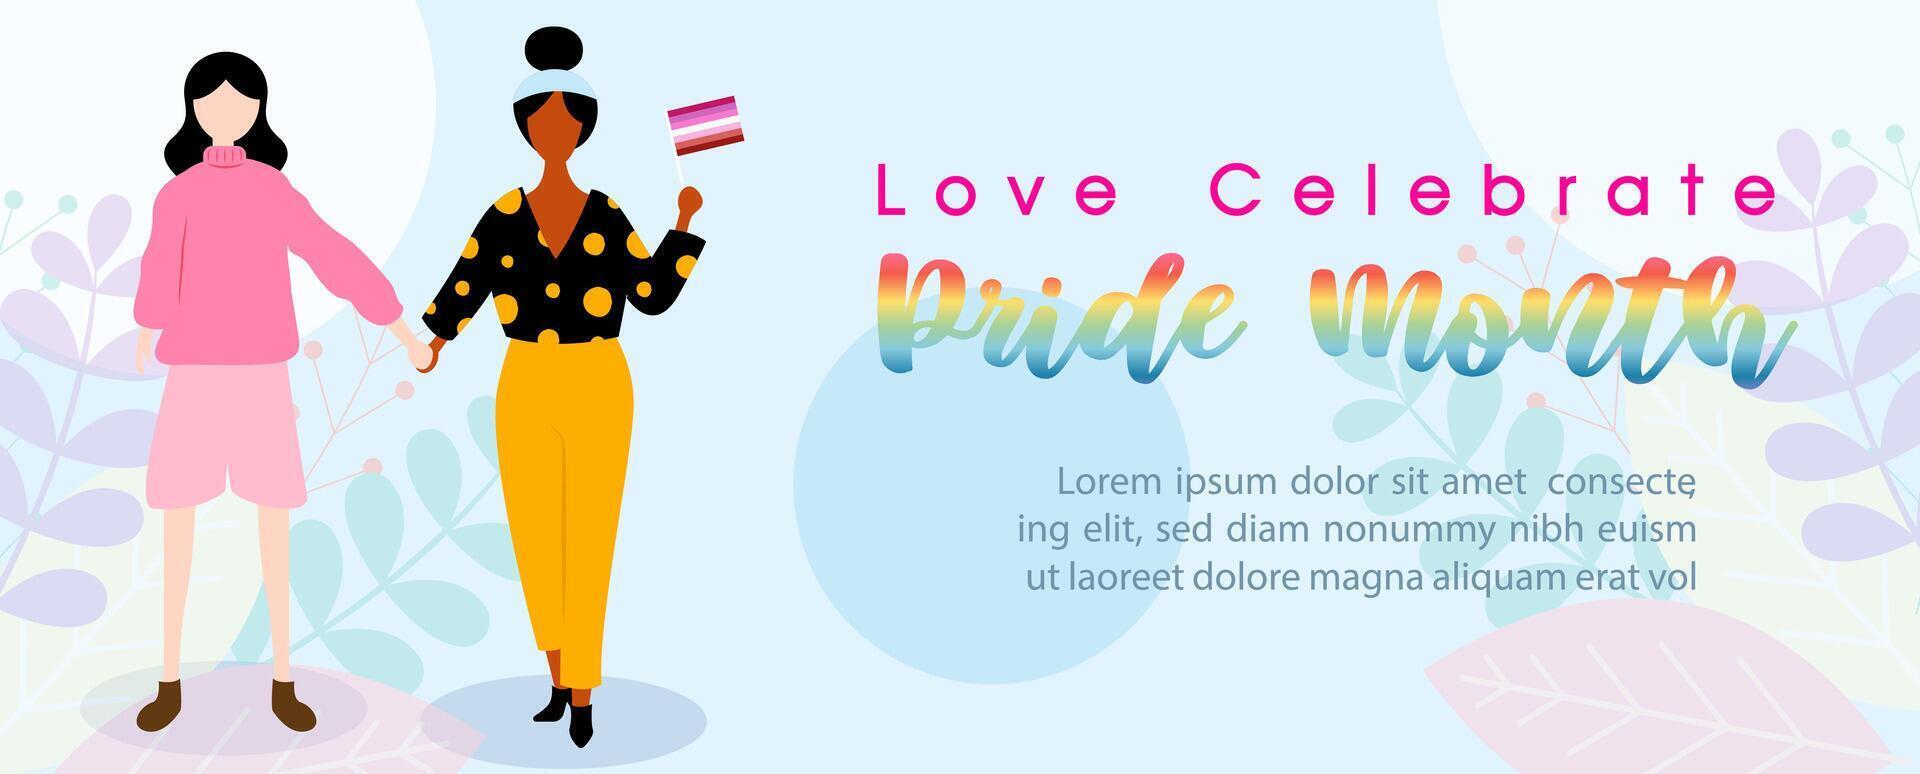 lesbiana Pareja con arco iris orgullo mes letras y ejemplo textos, póster de lgbt orgullo mes en vector diseño